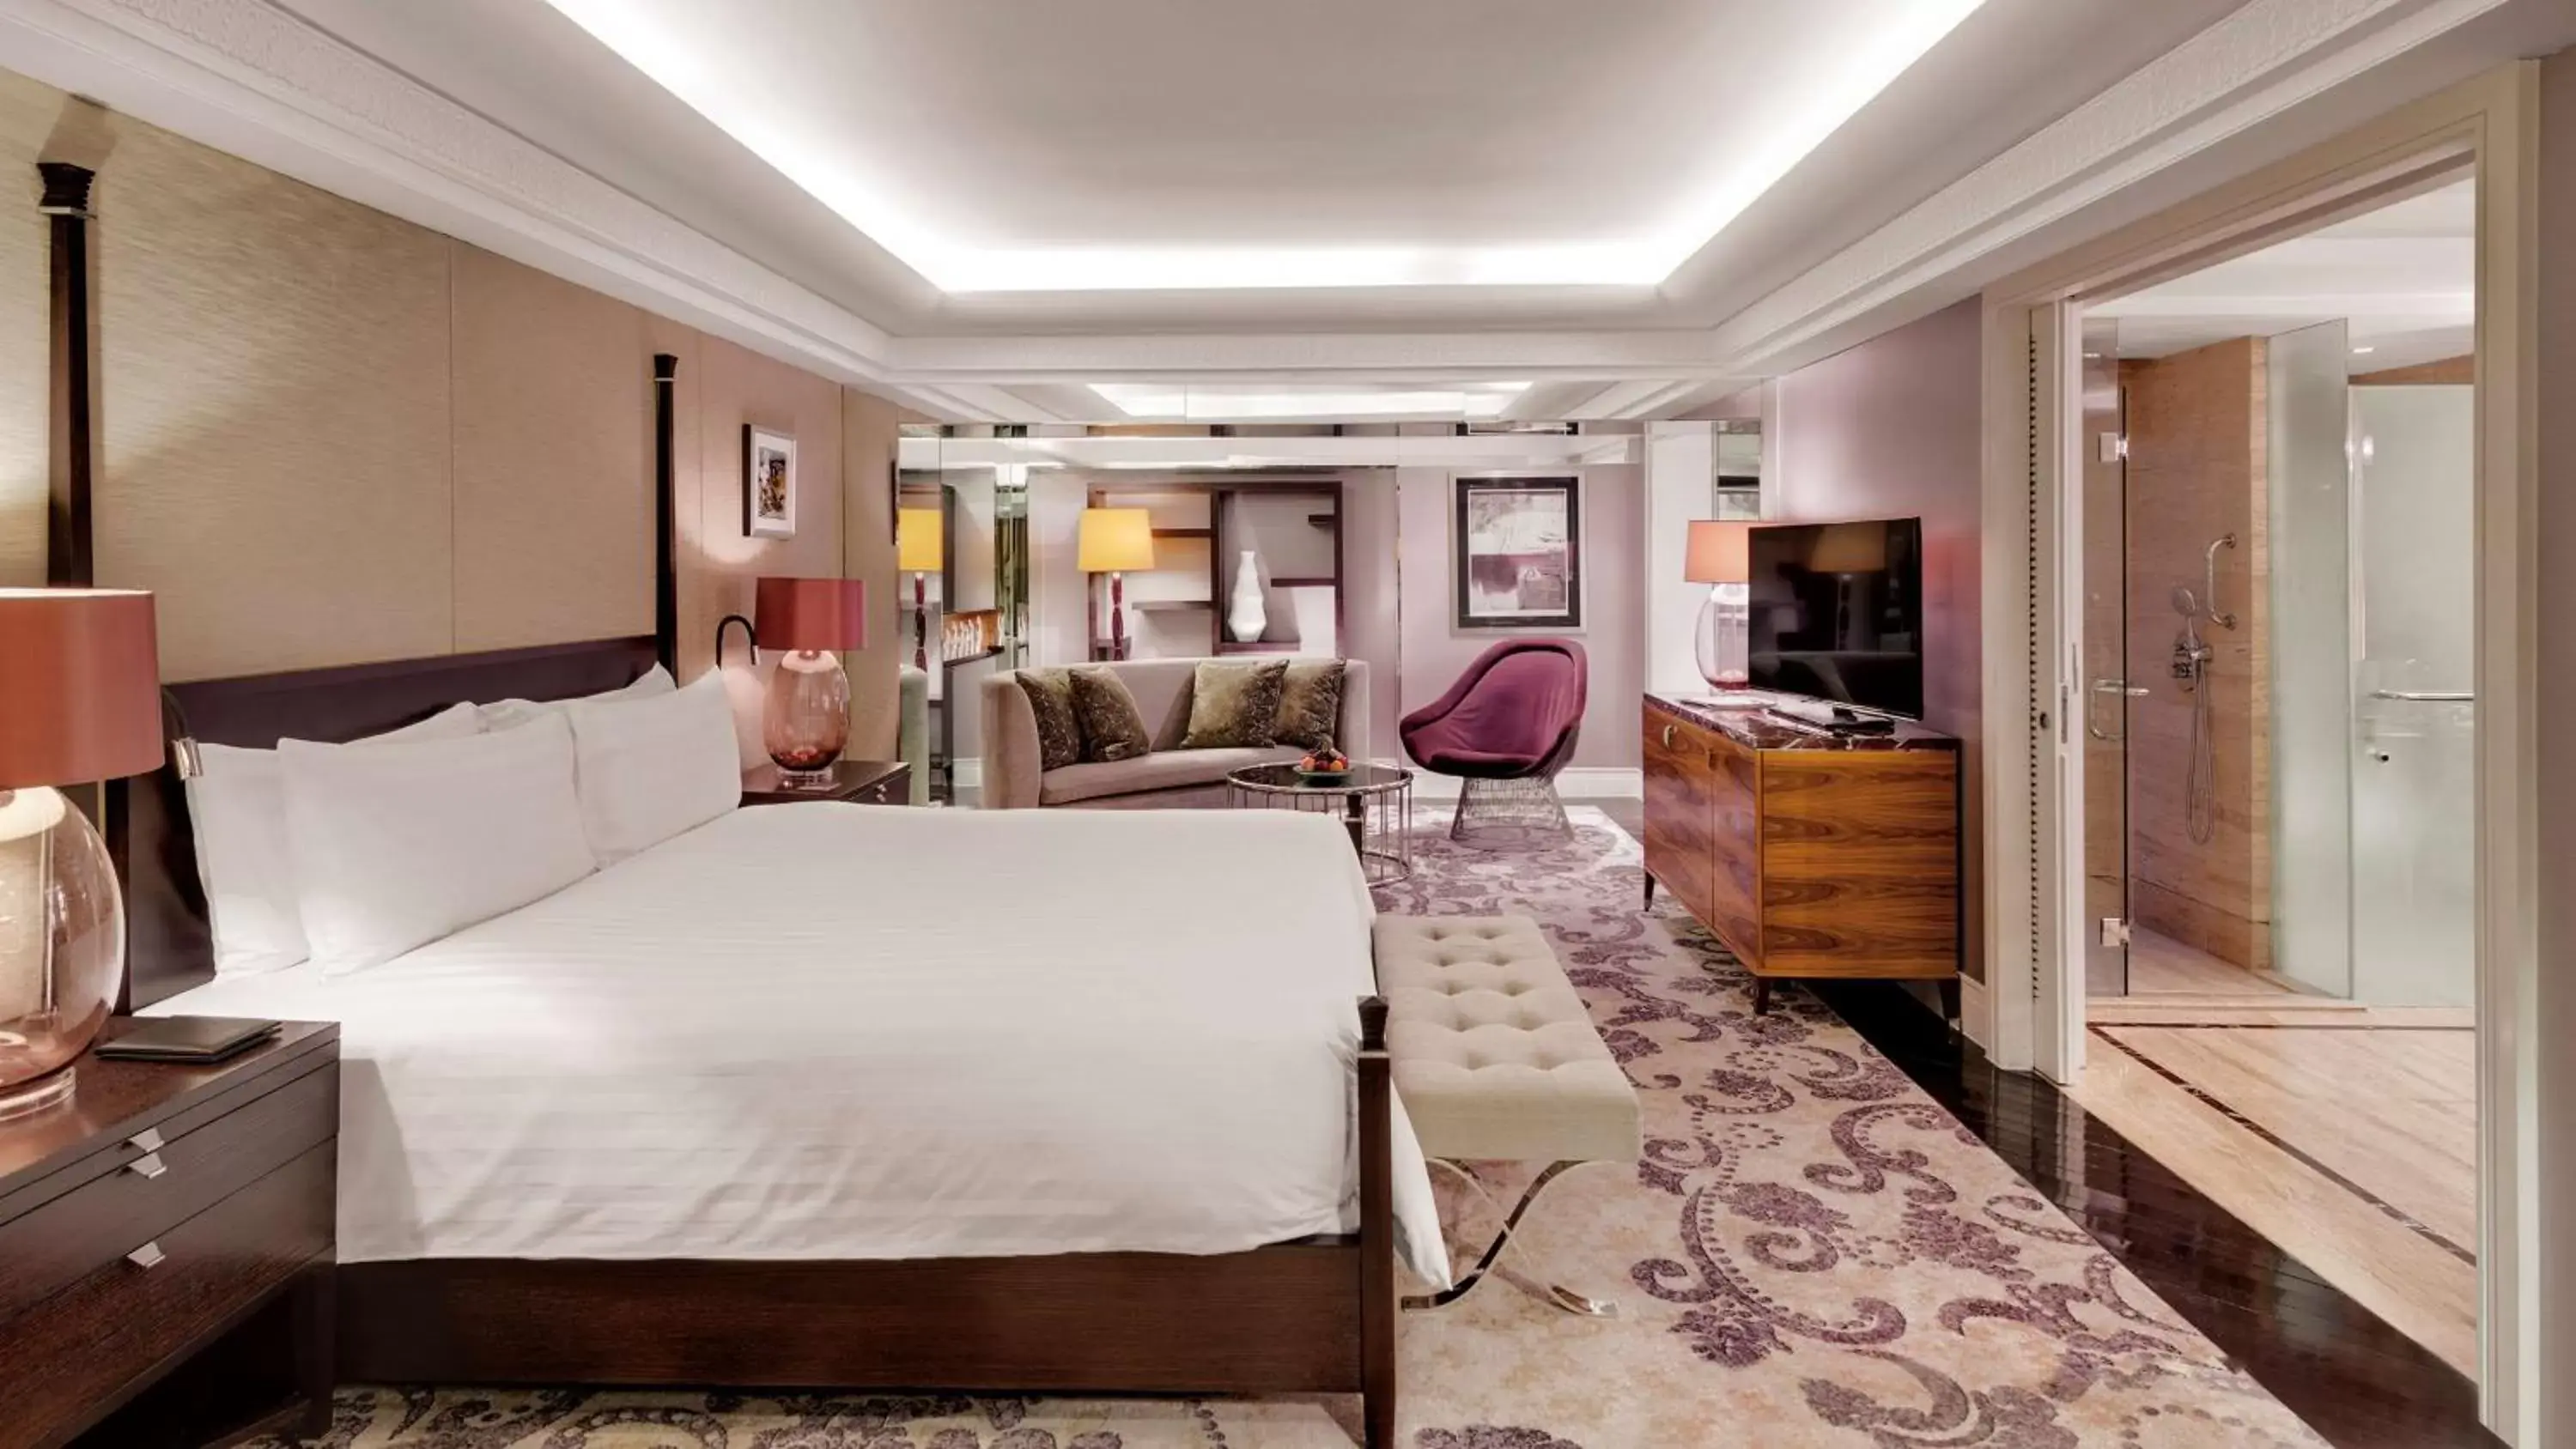 Bedroom in Hotel Indonesia Kempinski Jakarta